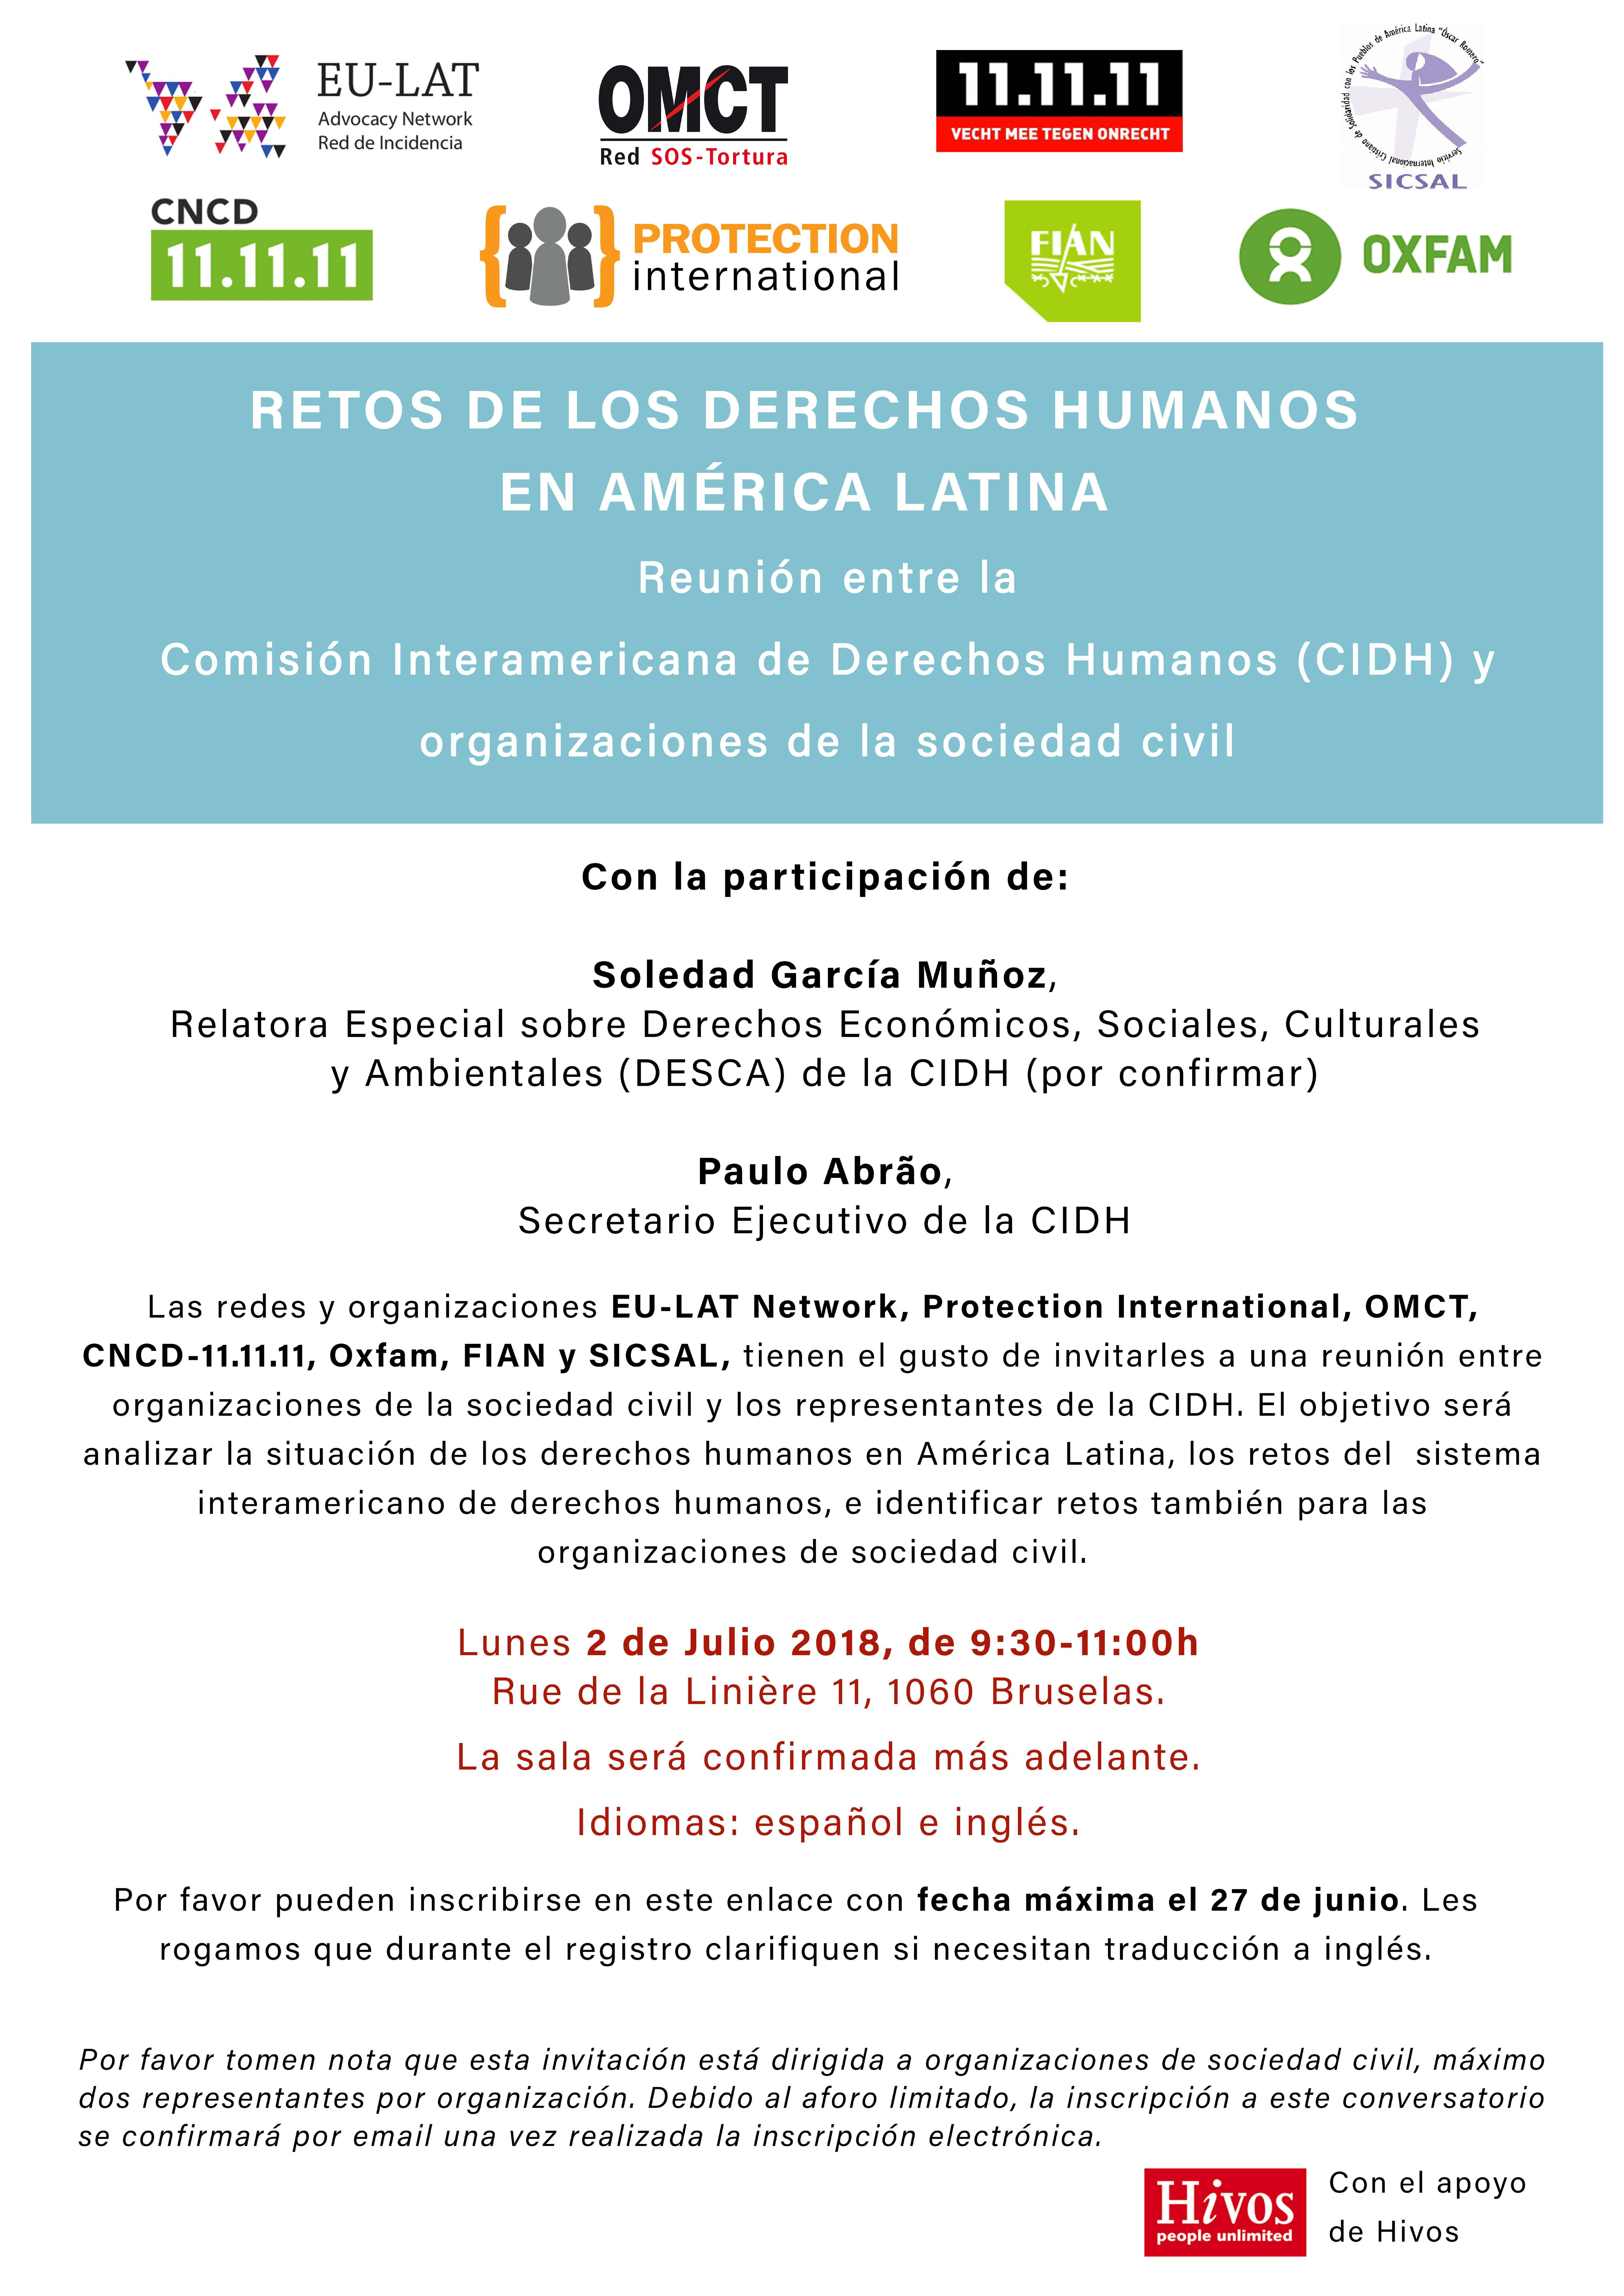 Invitación a encuentro entre la CIDH y organizaciones sociedad civil «Retos de los derechos humanos en América Latina